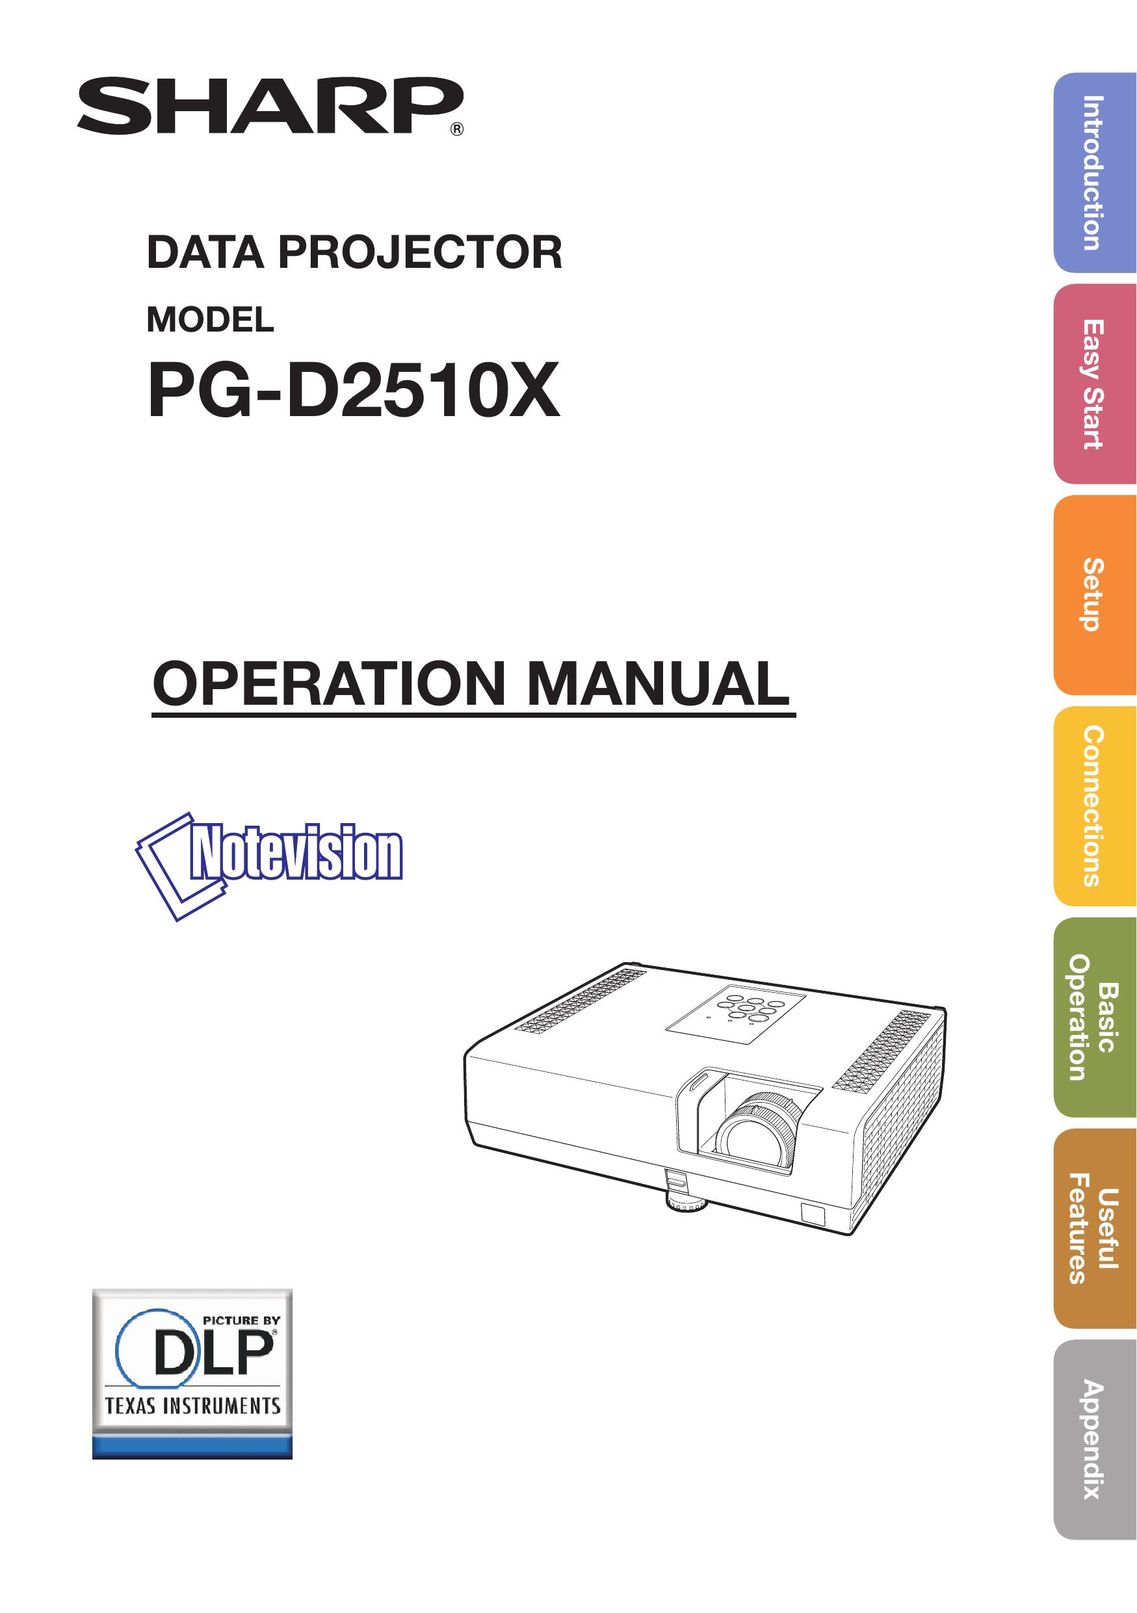 Sharp PG-D2510X Projector User Manual